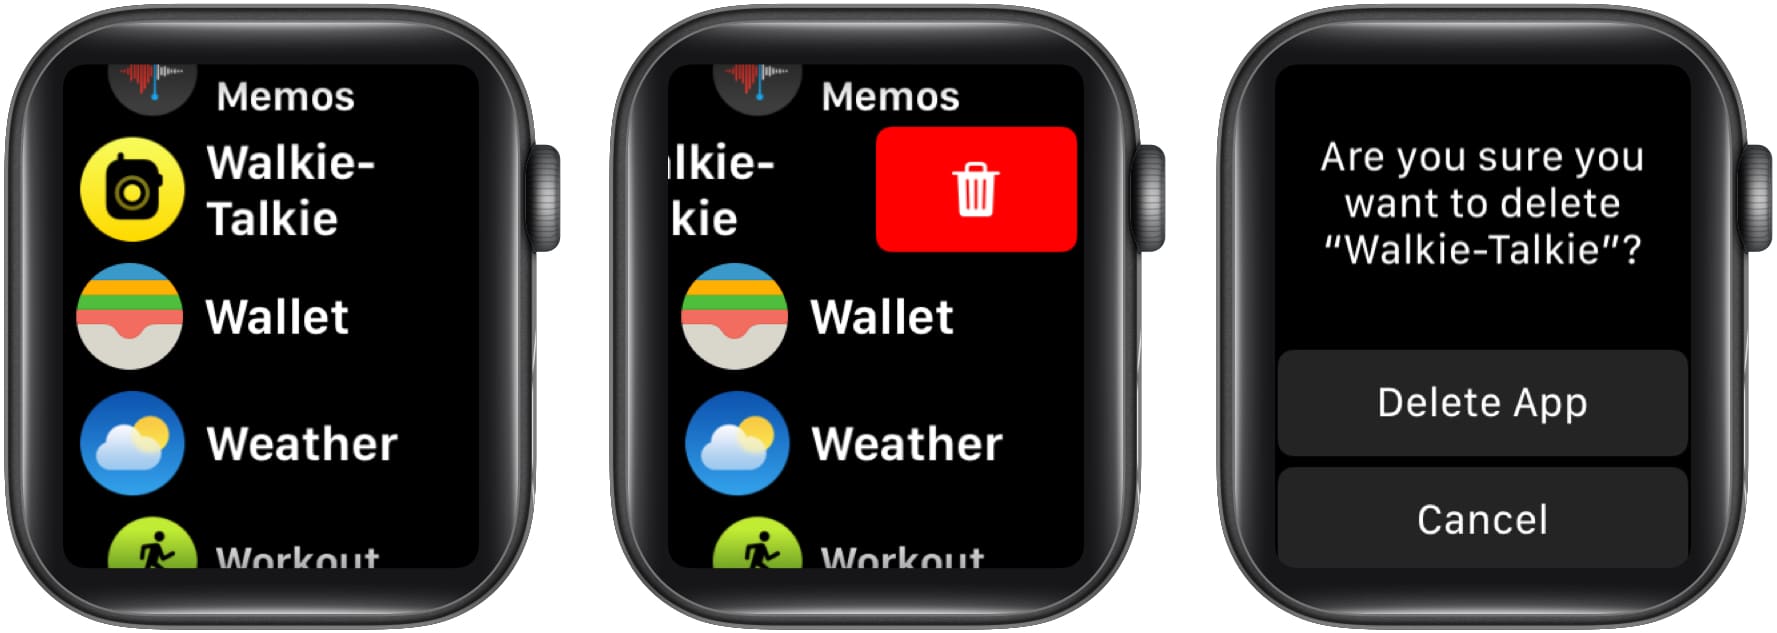 Delete Walkie-Talkie App using List view on Apple Watch